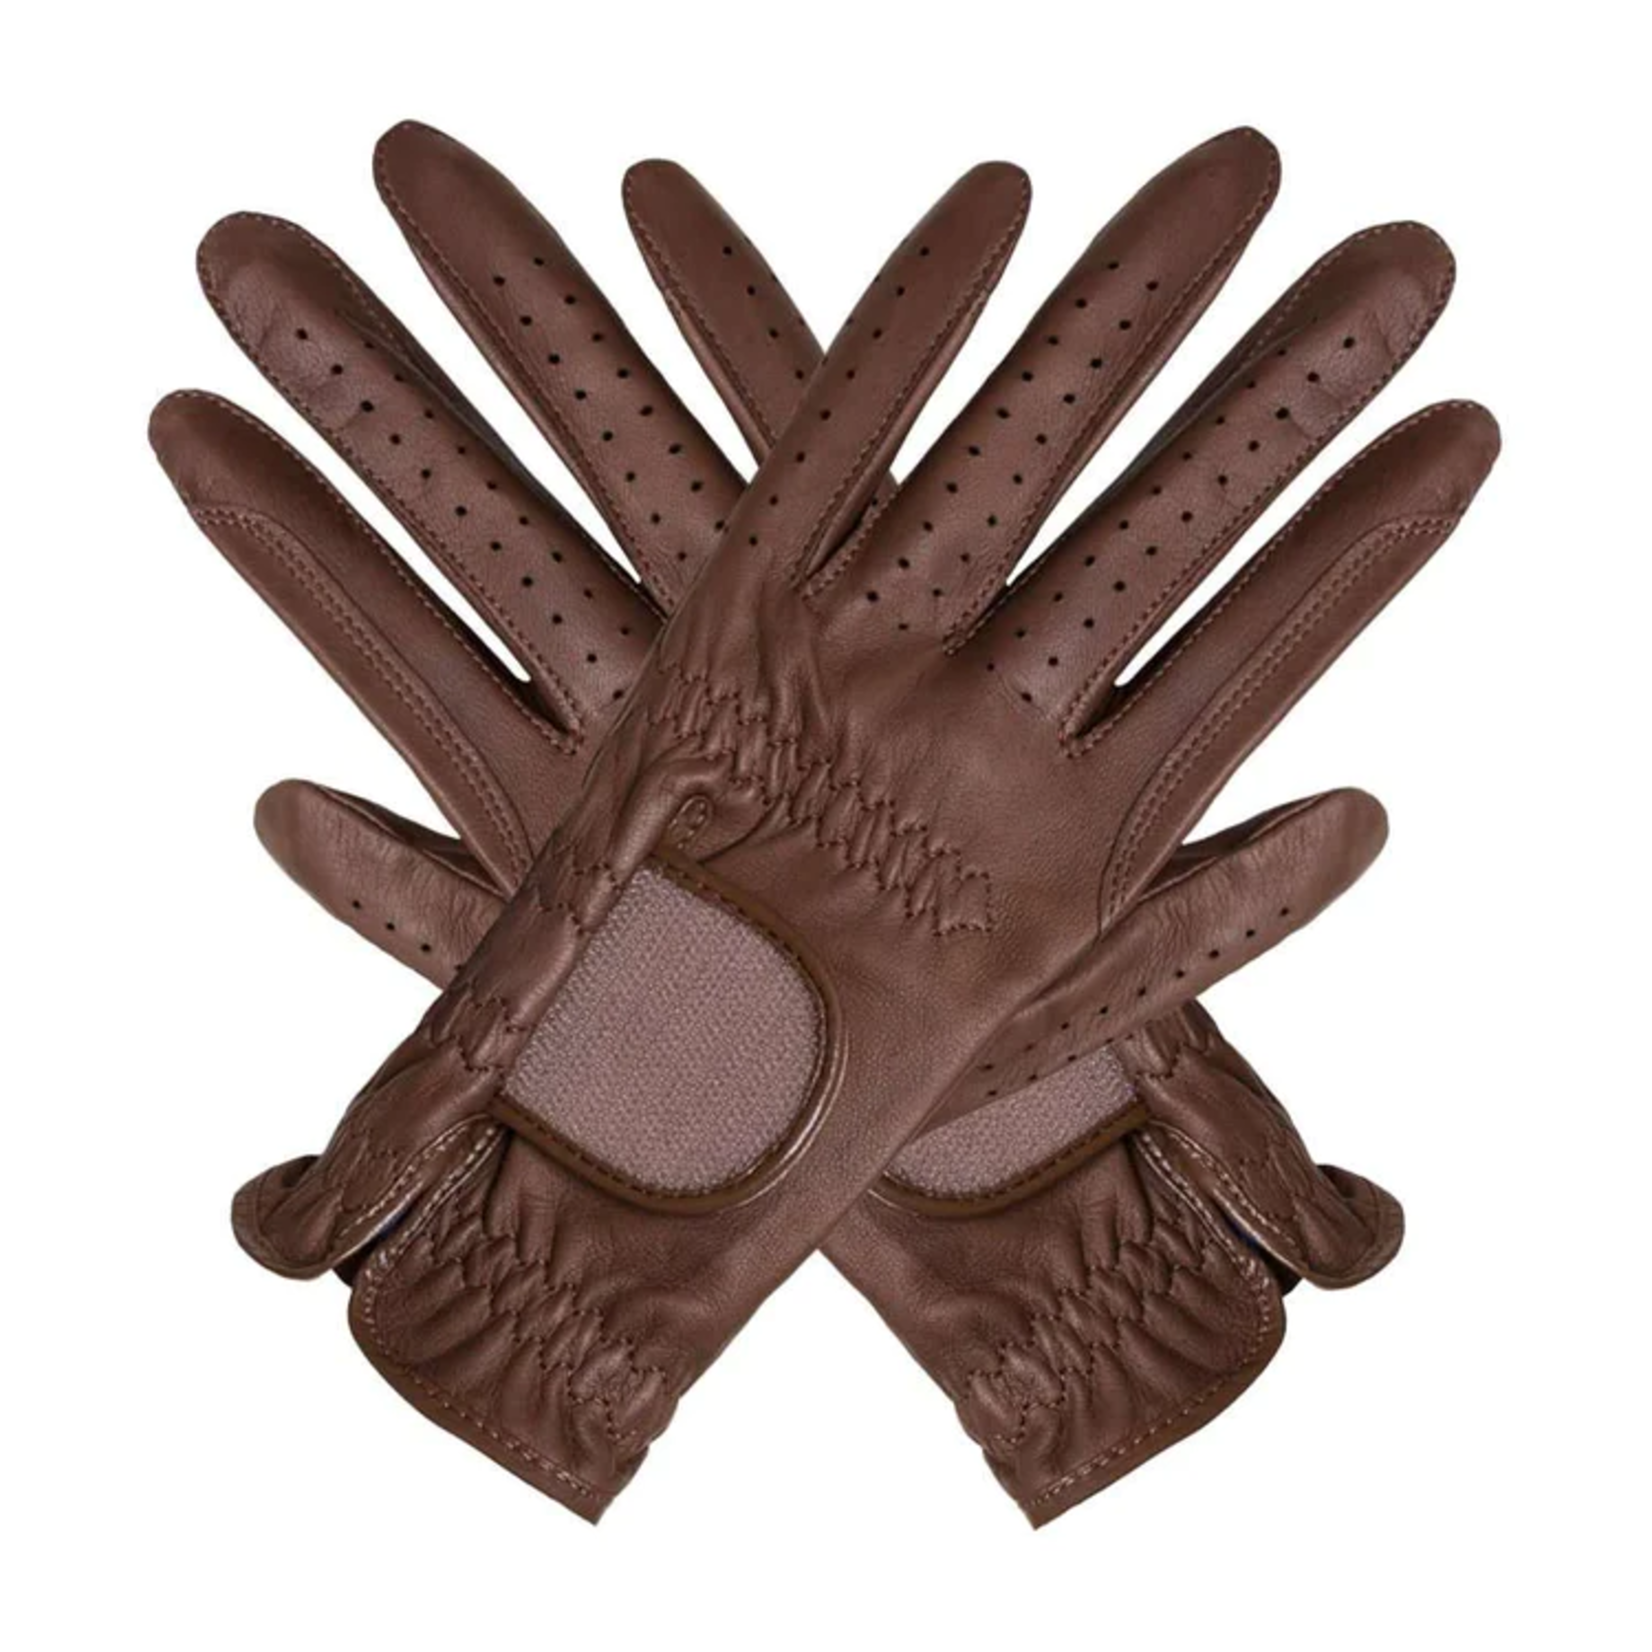 Eigen merk Hauke smidt gloves caramel  leather